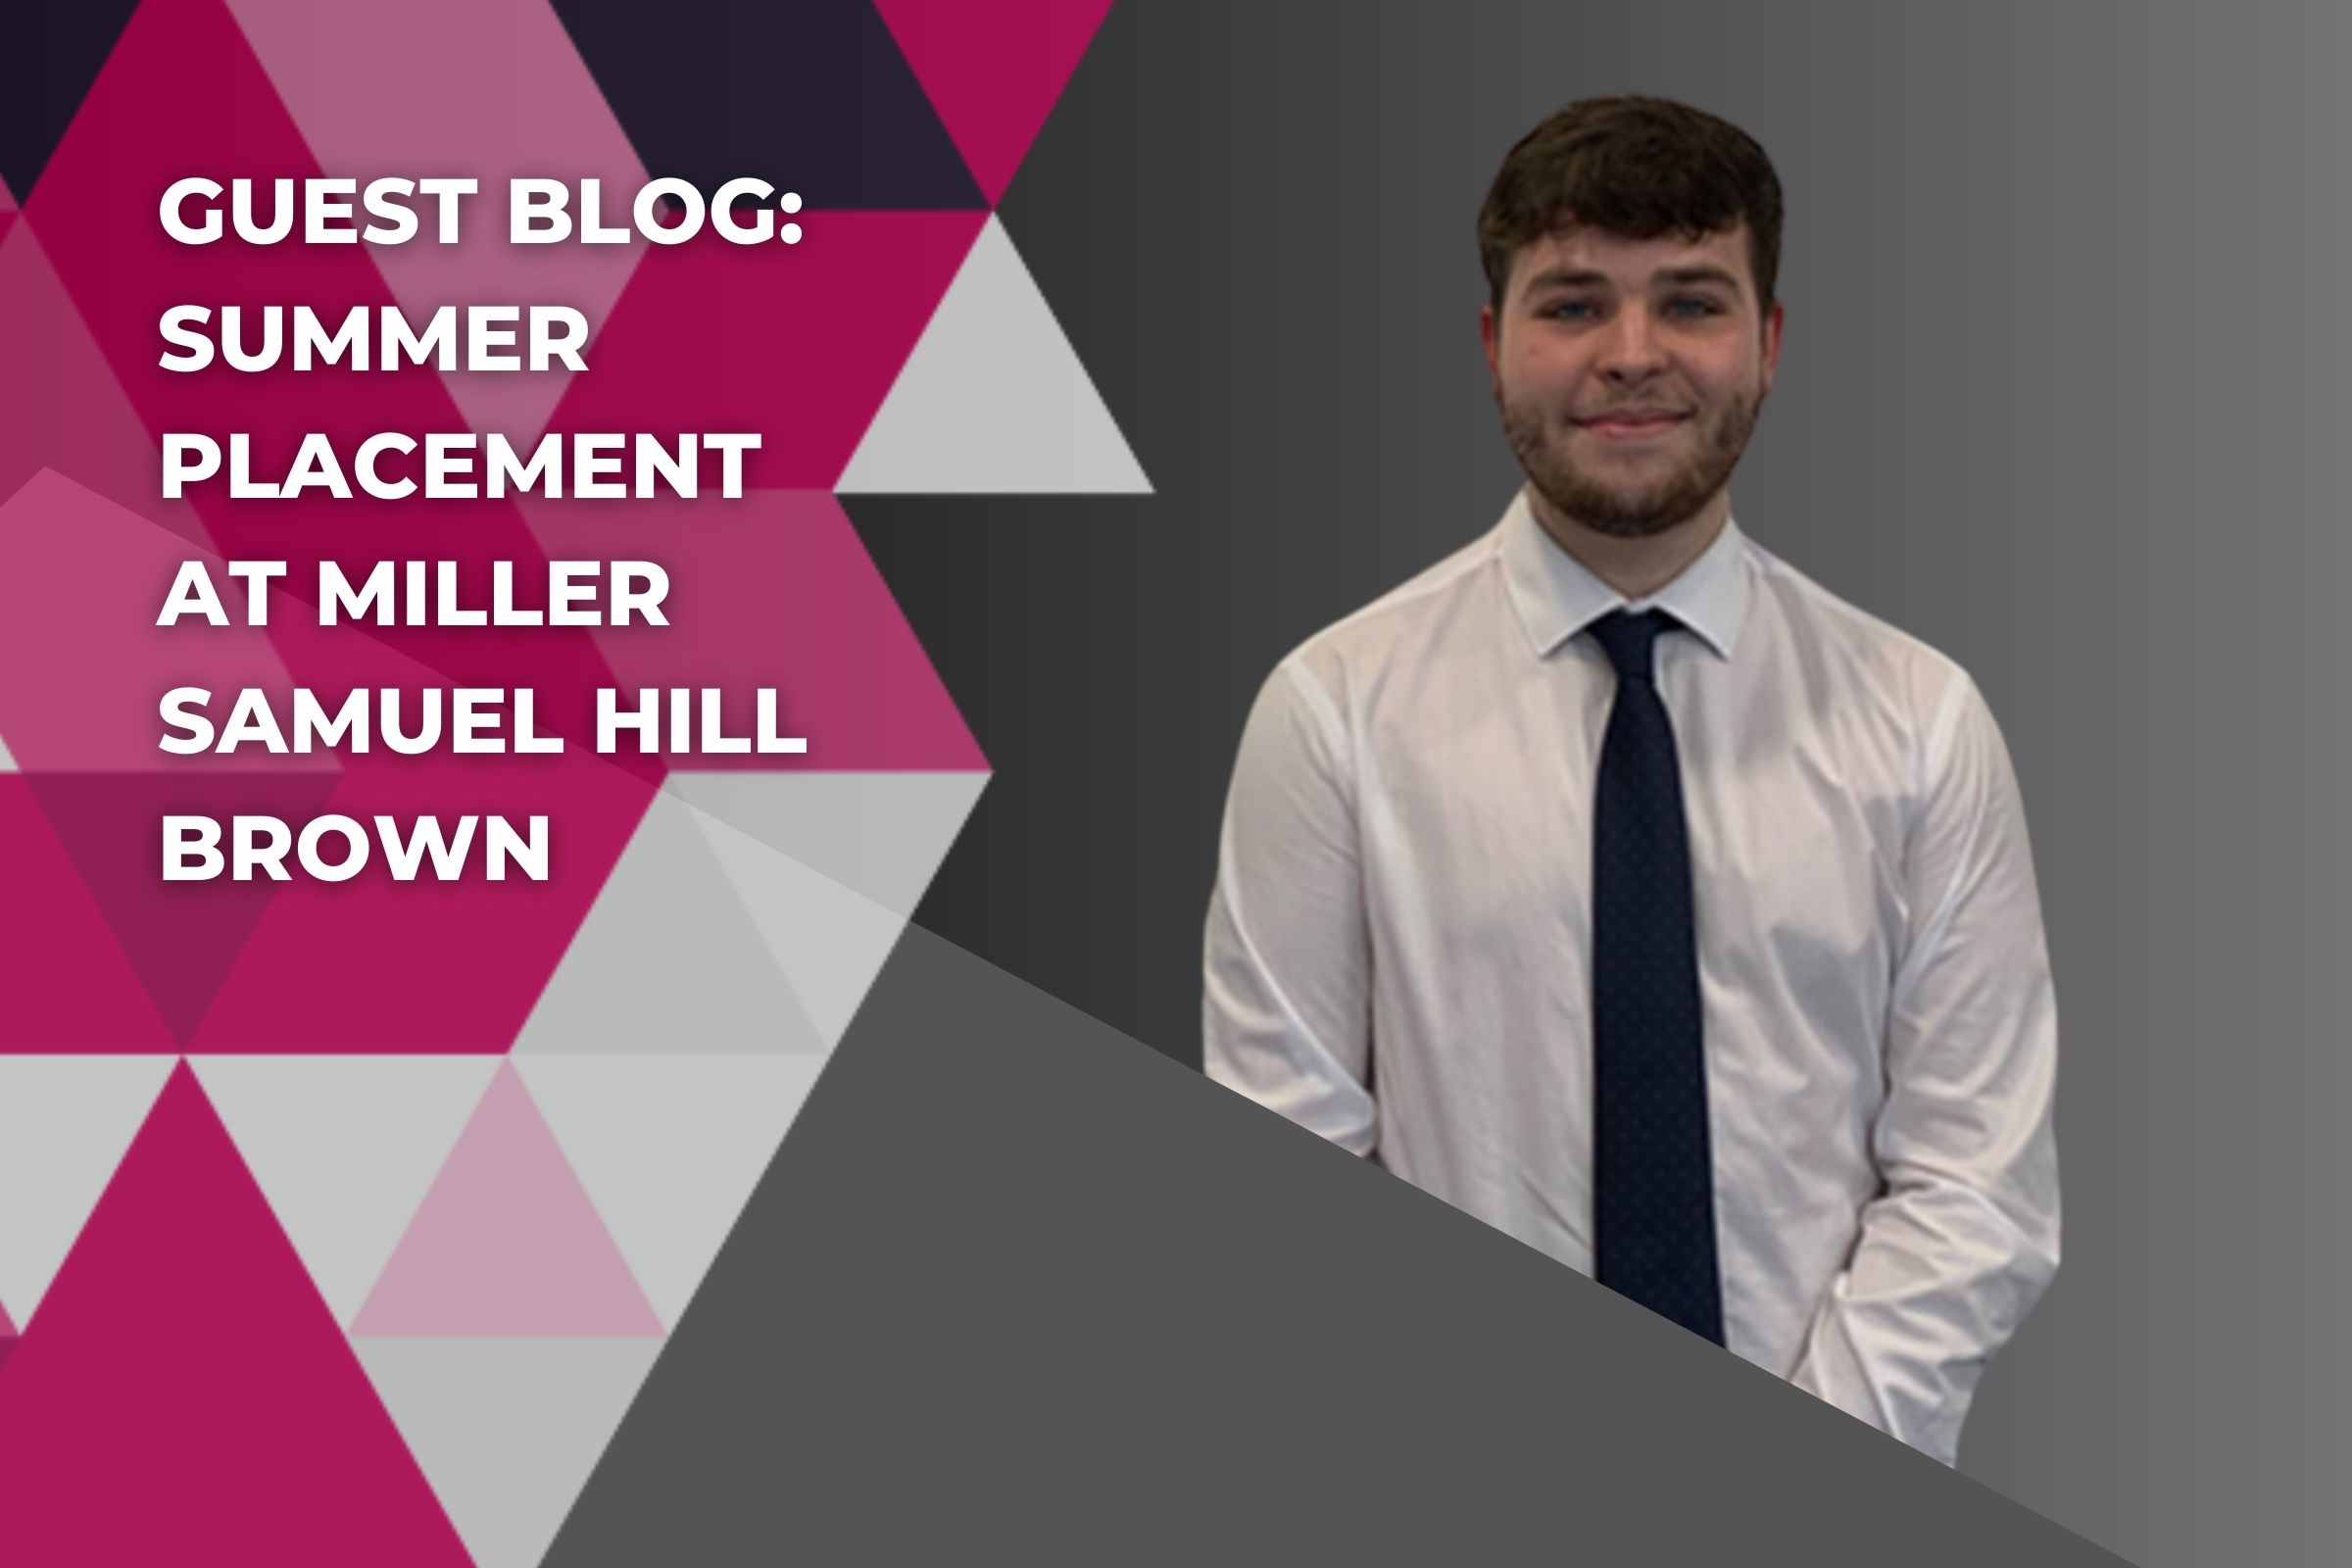 Guest Blog Summer Placement at Miller Samuel Hill Brown